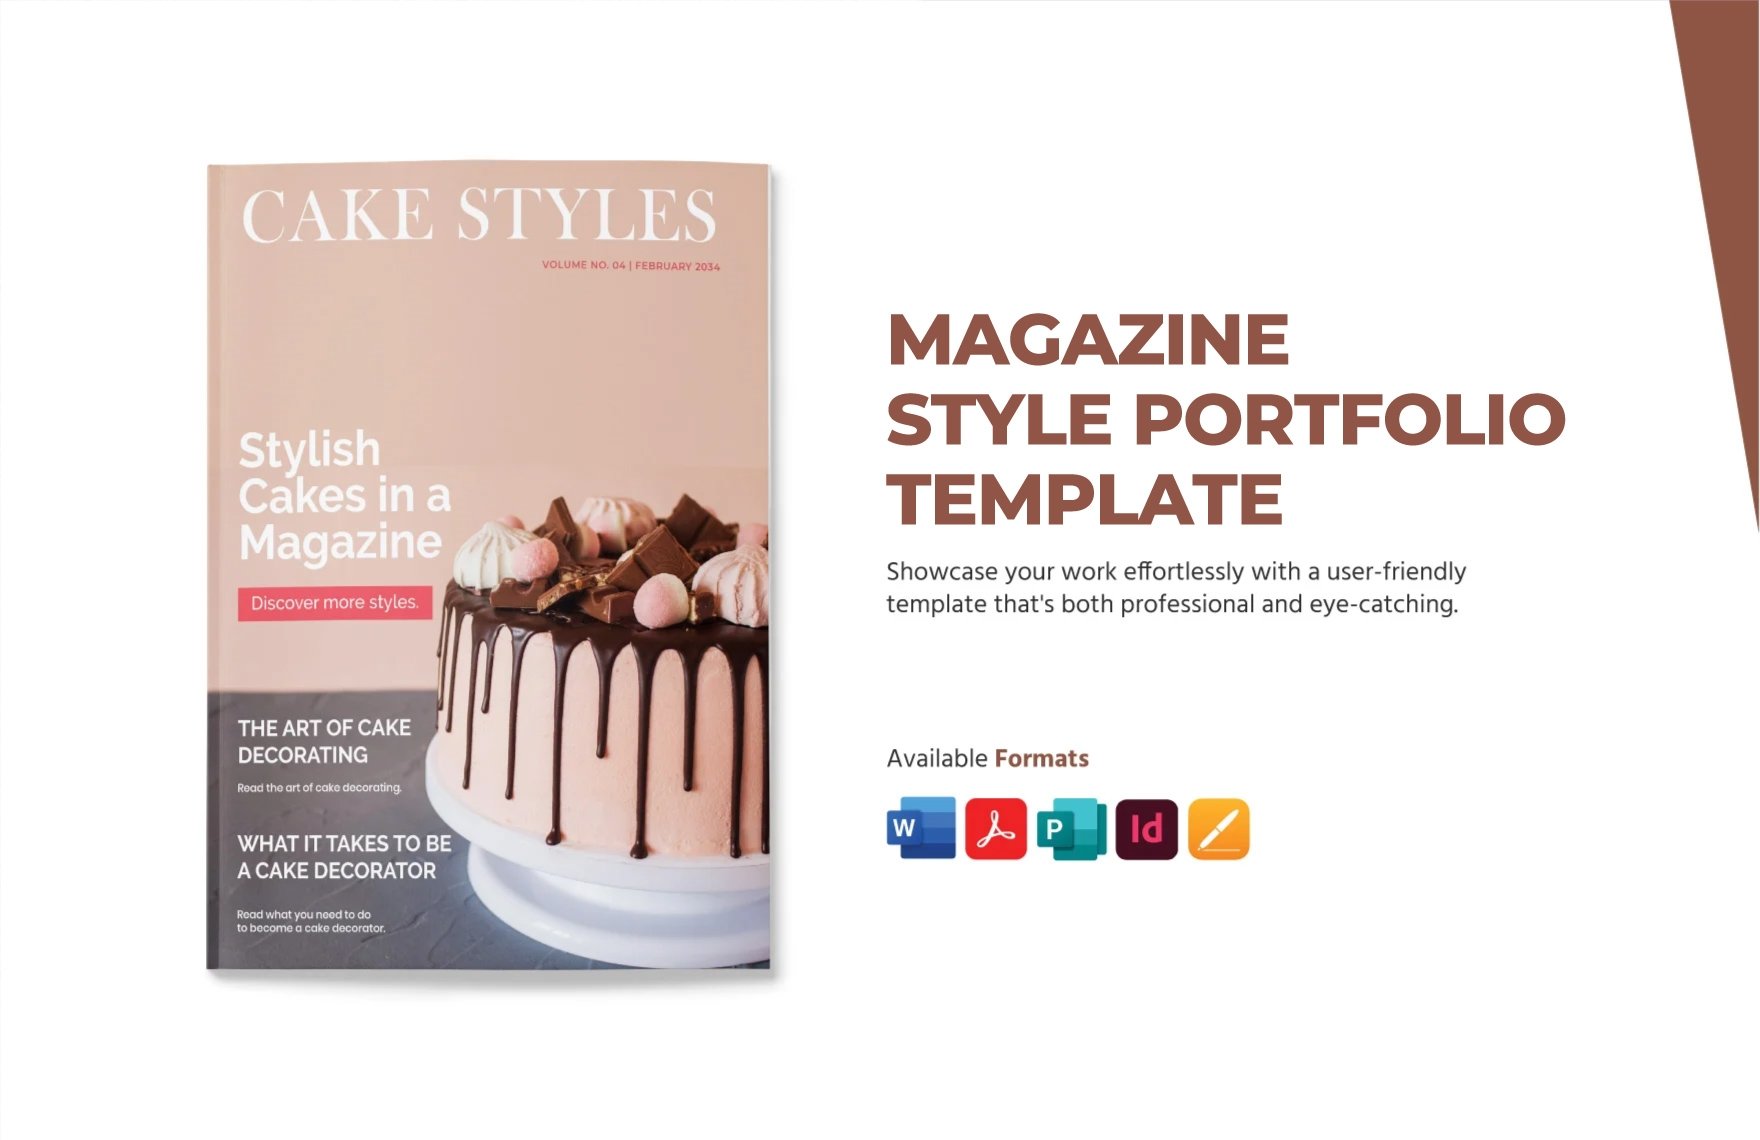 Free Magazine Style Portfolio Template